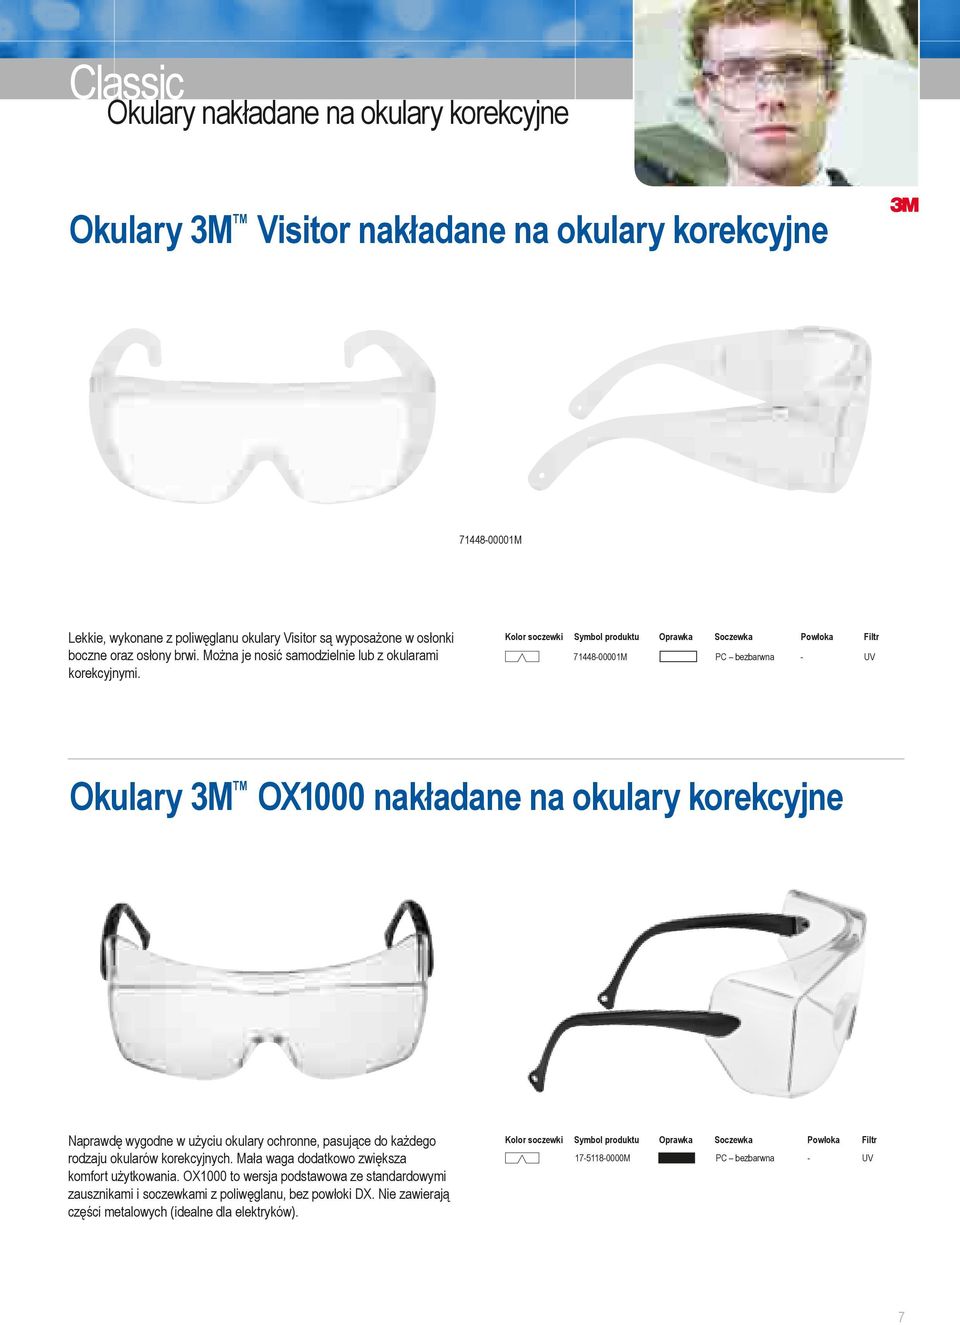 71448-00001M - 3M OX1000 nakładane na okulary korekcyjne Naprawdę wygodne w użyciu okulary ochronne, pasujące do każdego rodzaju okularów korekcyjnych.